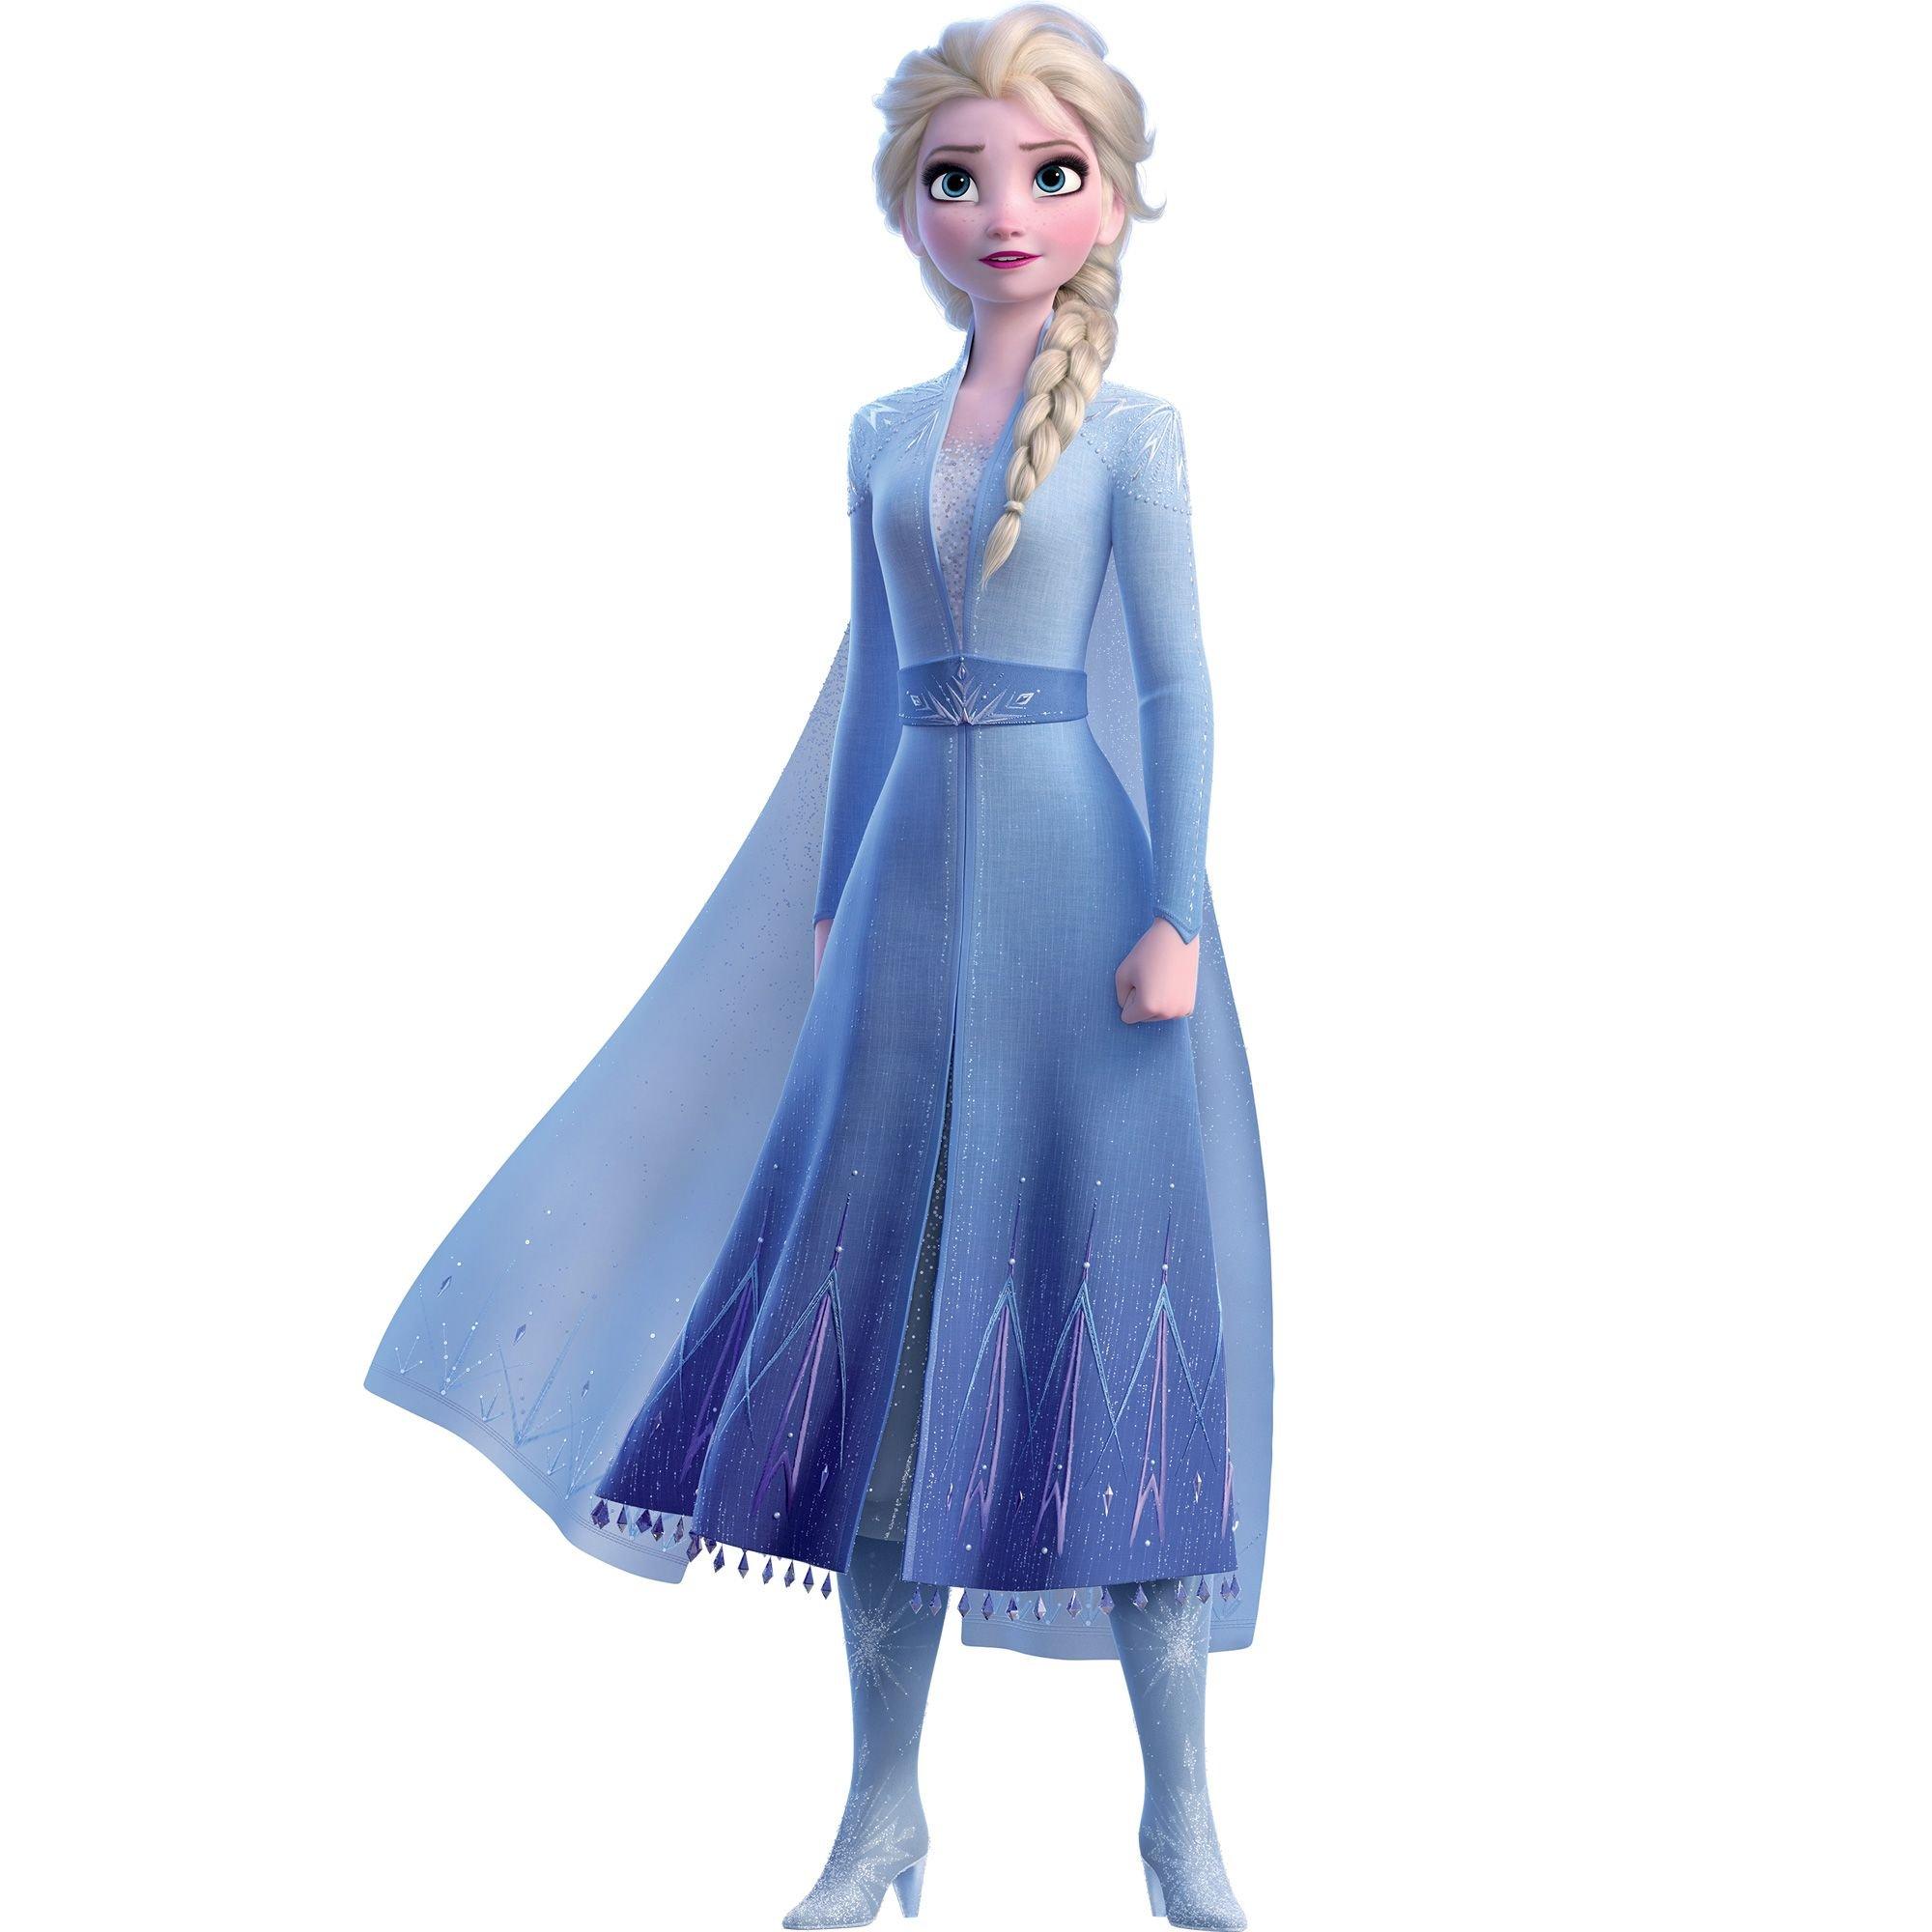 Frozen - Set Elsa Style Frozen 2, DP FROZEN